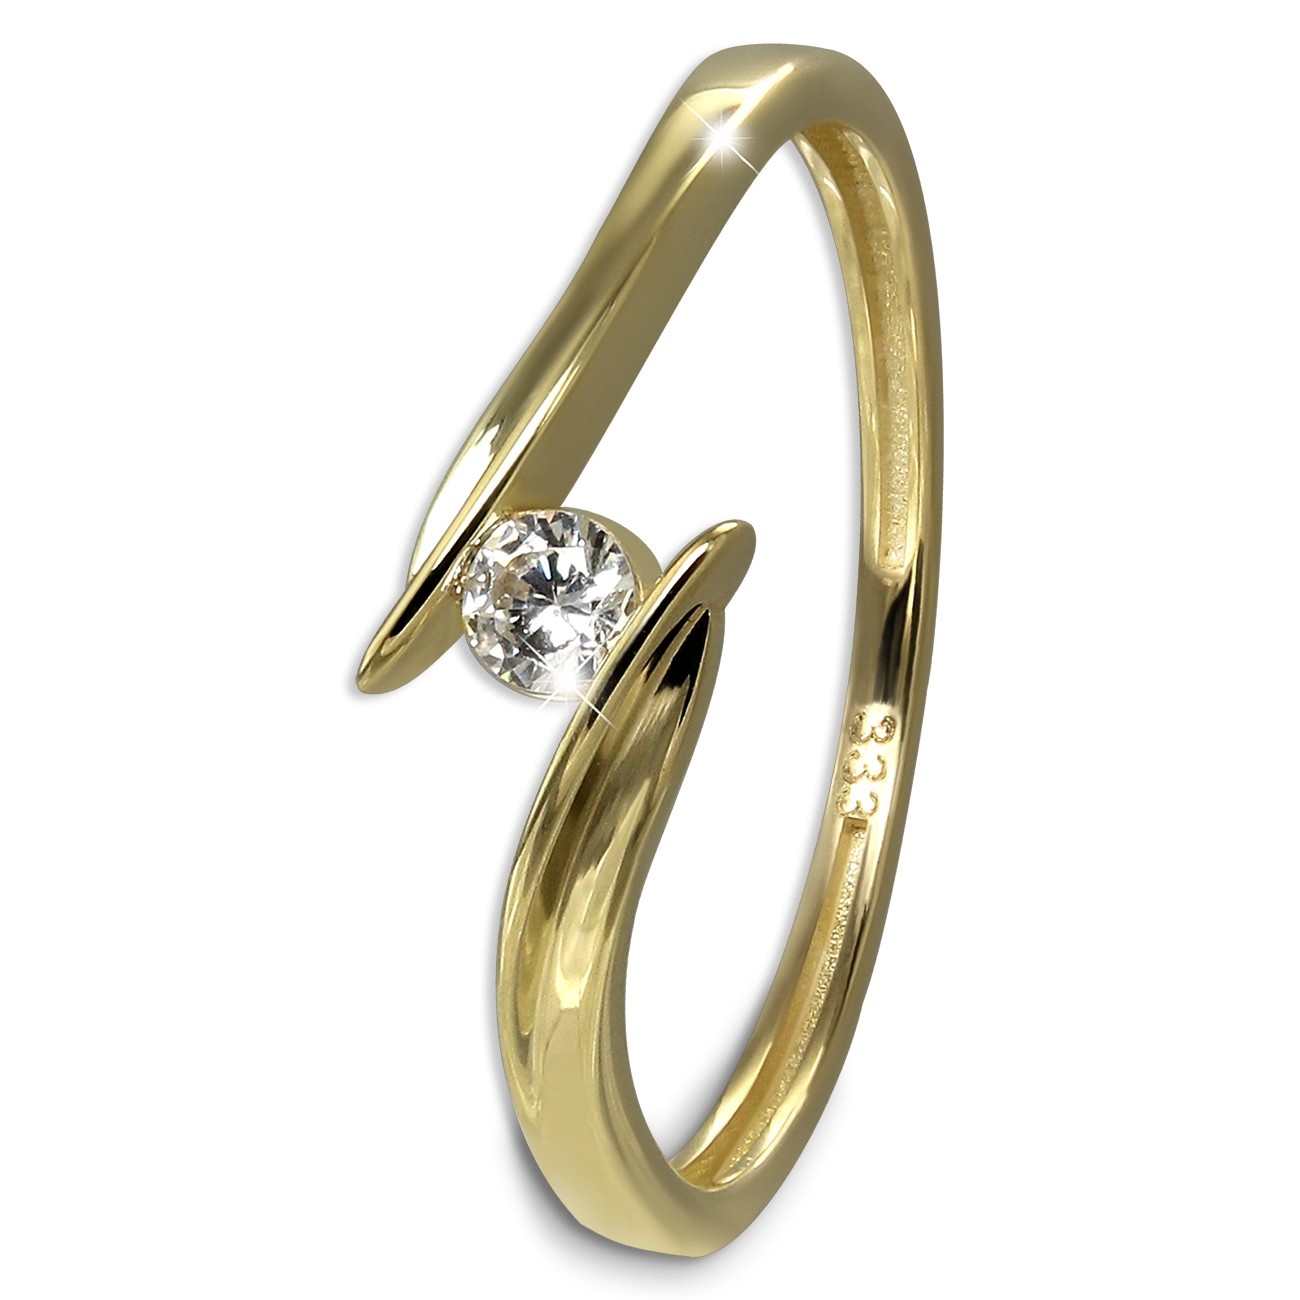 GoldDream Gold Ring Klassik Gr.54 333er Gelbgold GDR553Y54